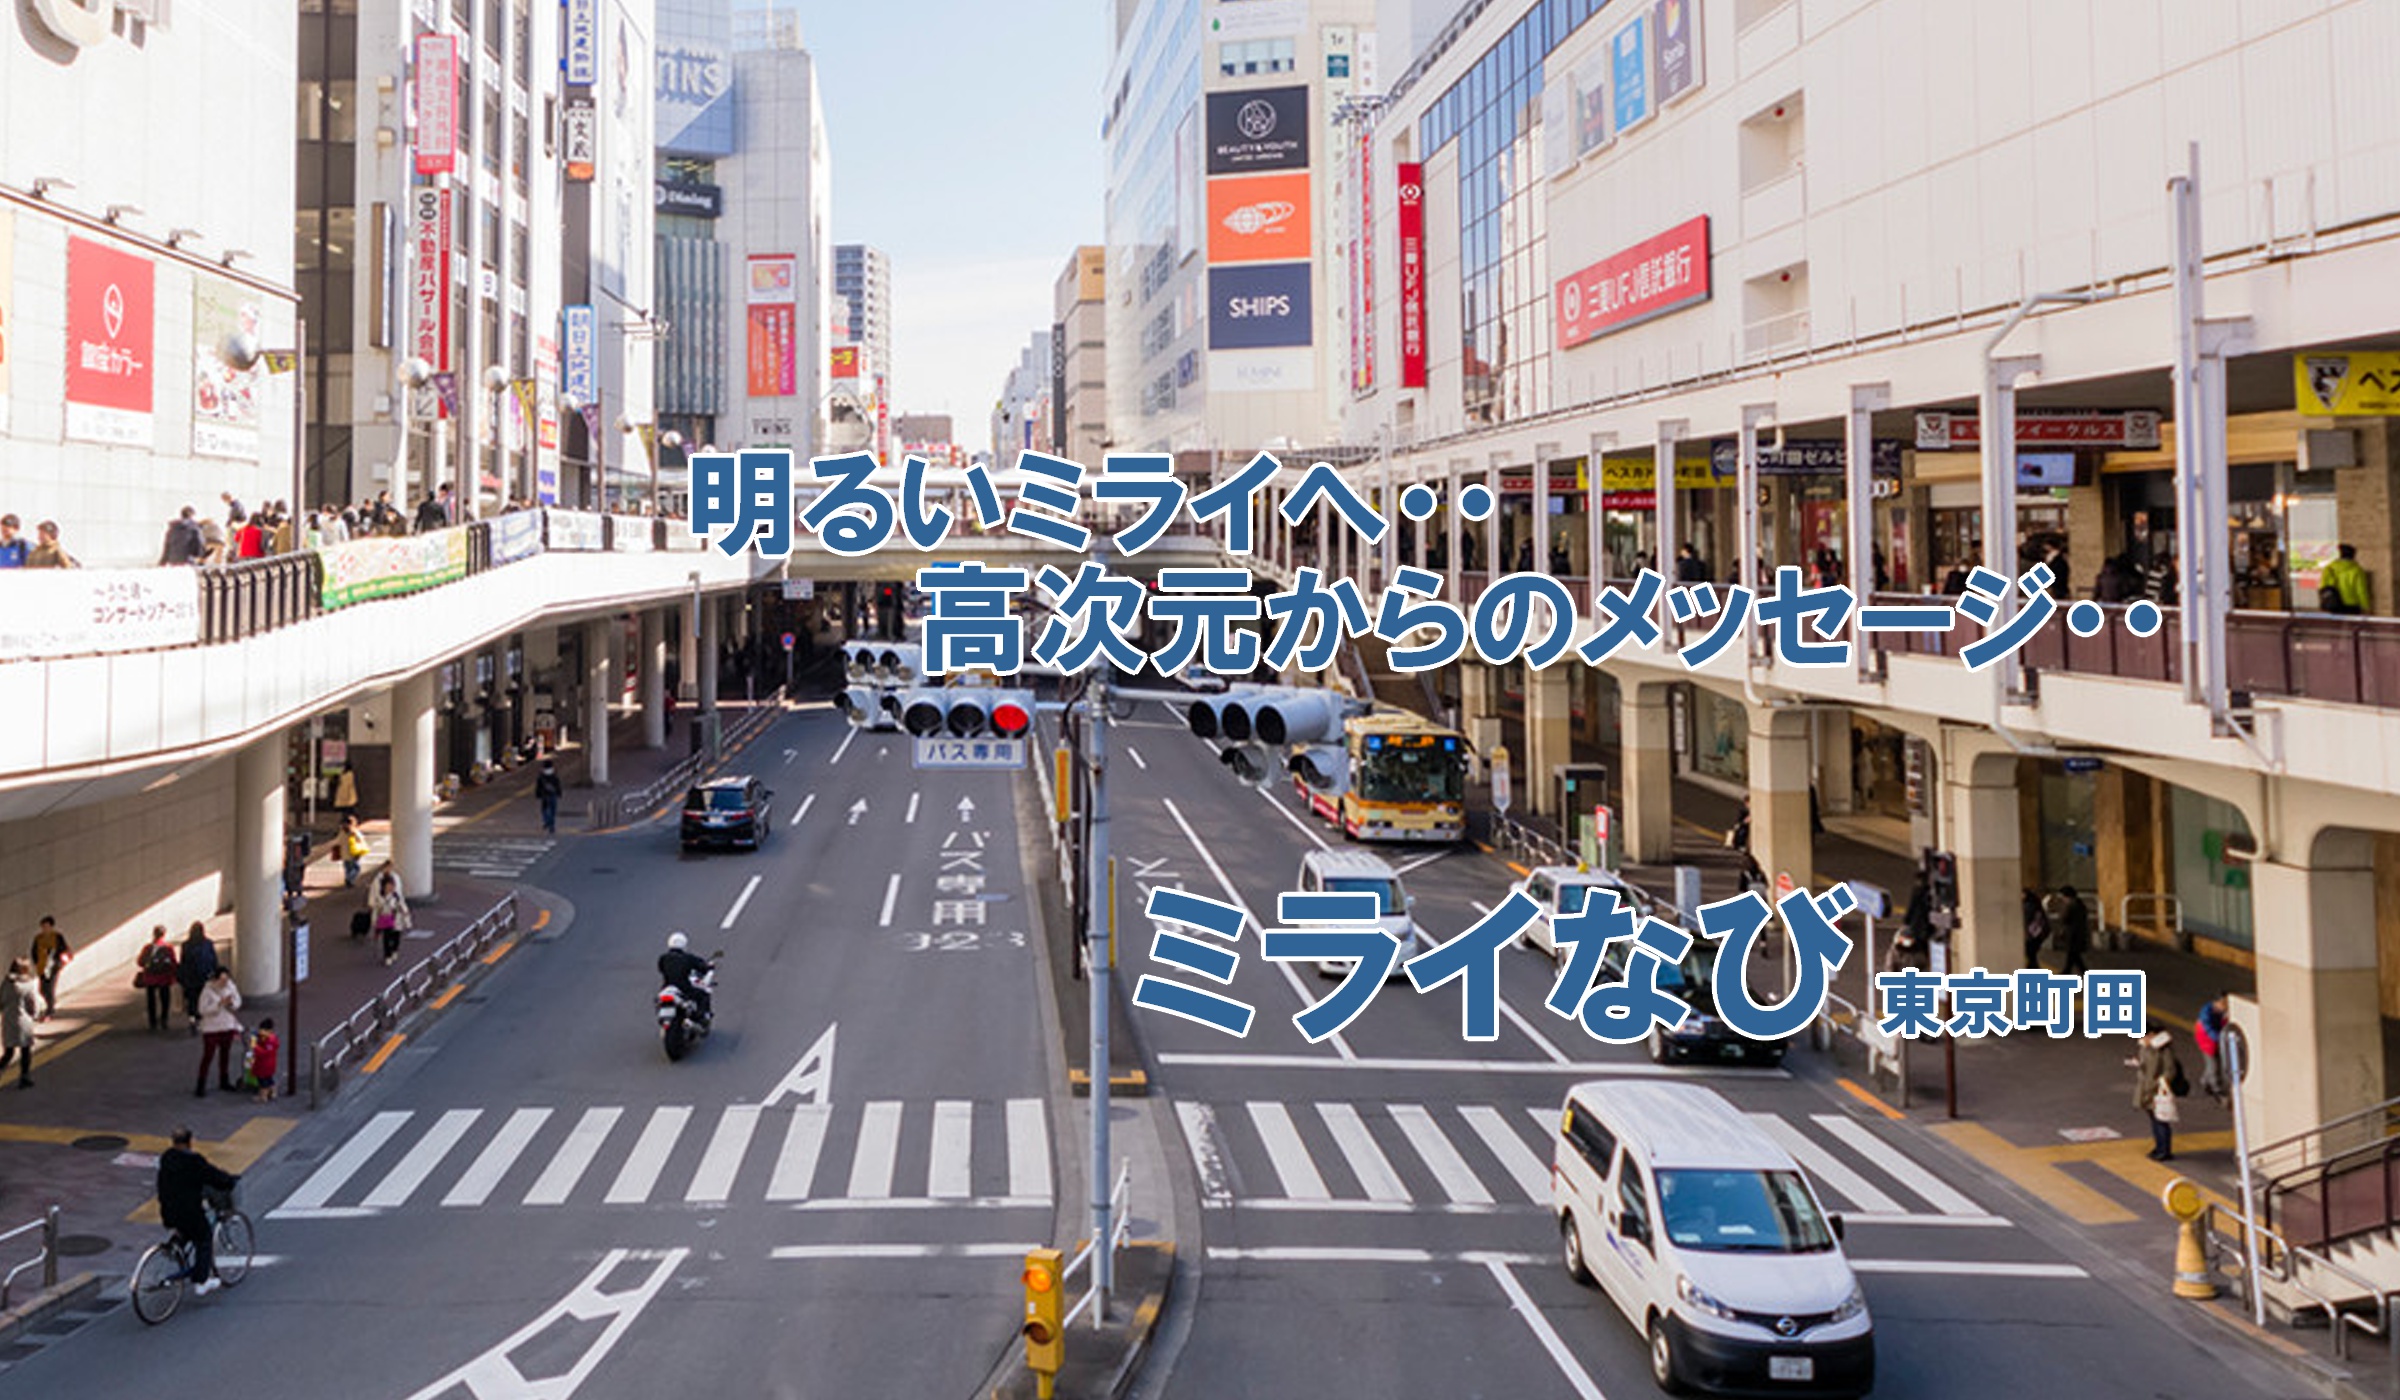 スピリチュアルカウンセリングと占いサロンミライなび　神奈川県東京町田で当たると口コミで人気になったスピリチュアルカウンセリングサロン